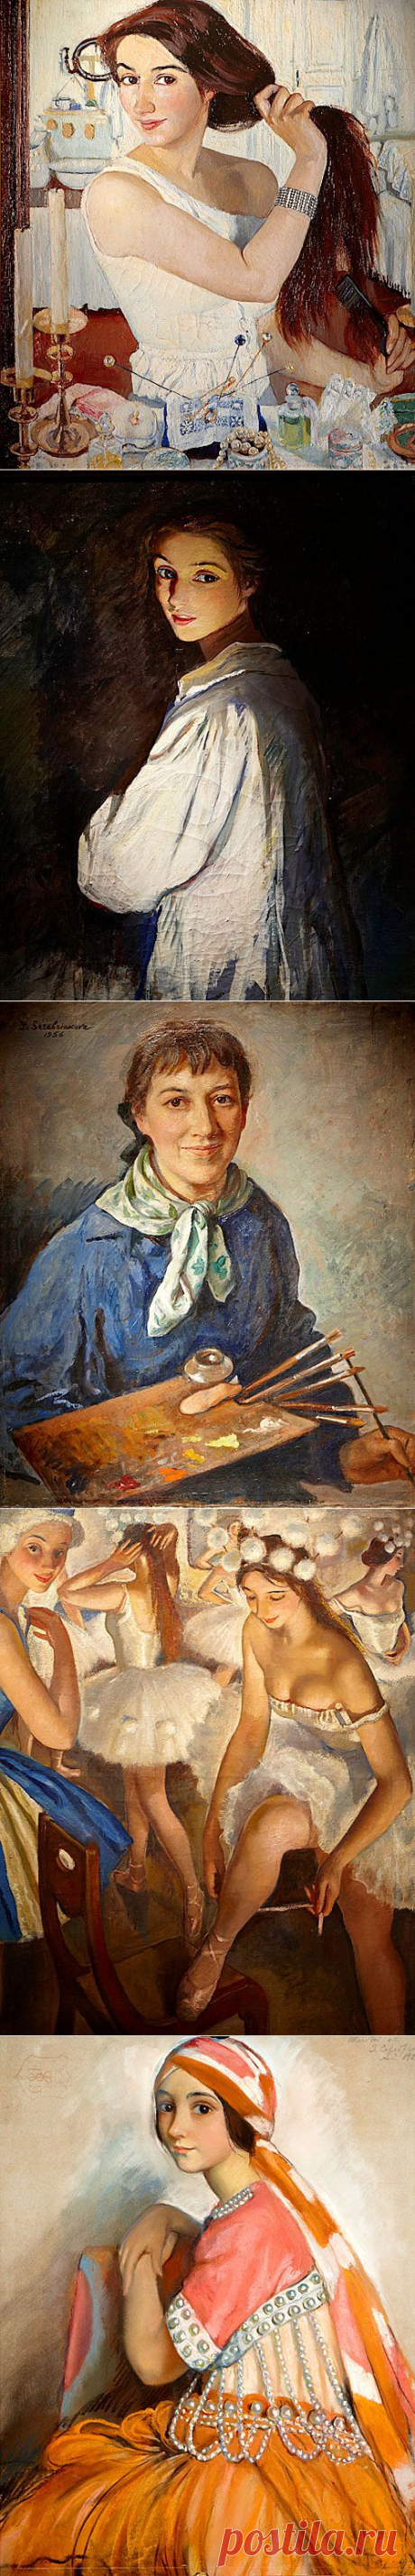 Зинаида Серебрякова. Женщина и художник | Изюминки